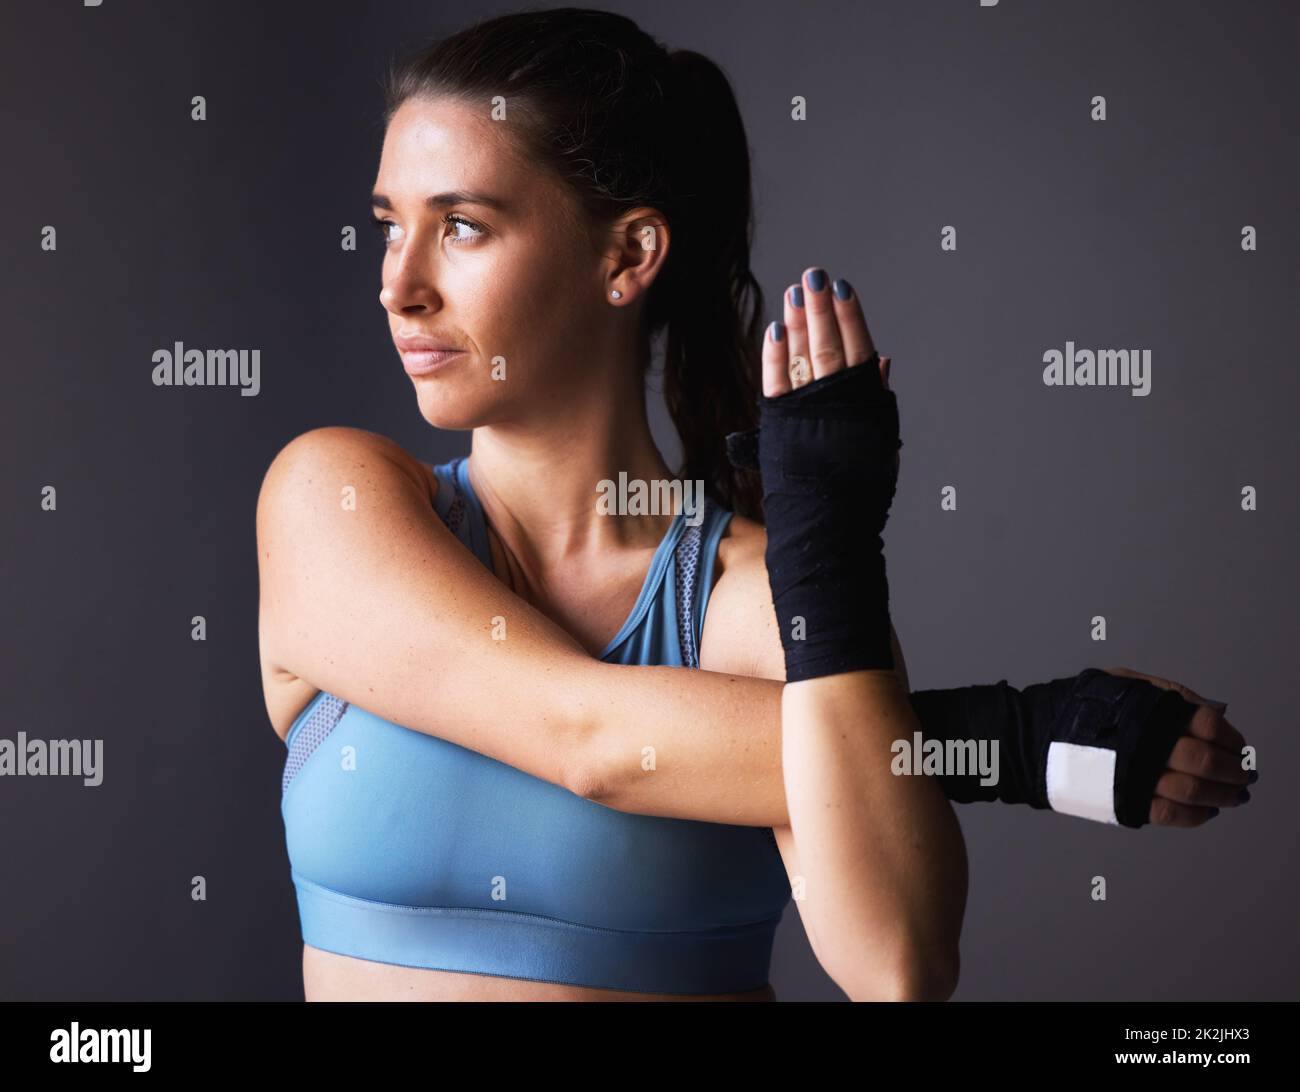 Es ist alles im Kopf. Aufnahme einer jungen Frau, die ihre Arme vor einem grauen Hintergrund streckt. Stockfoto